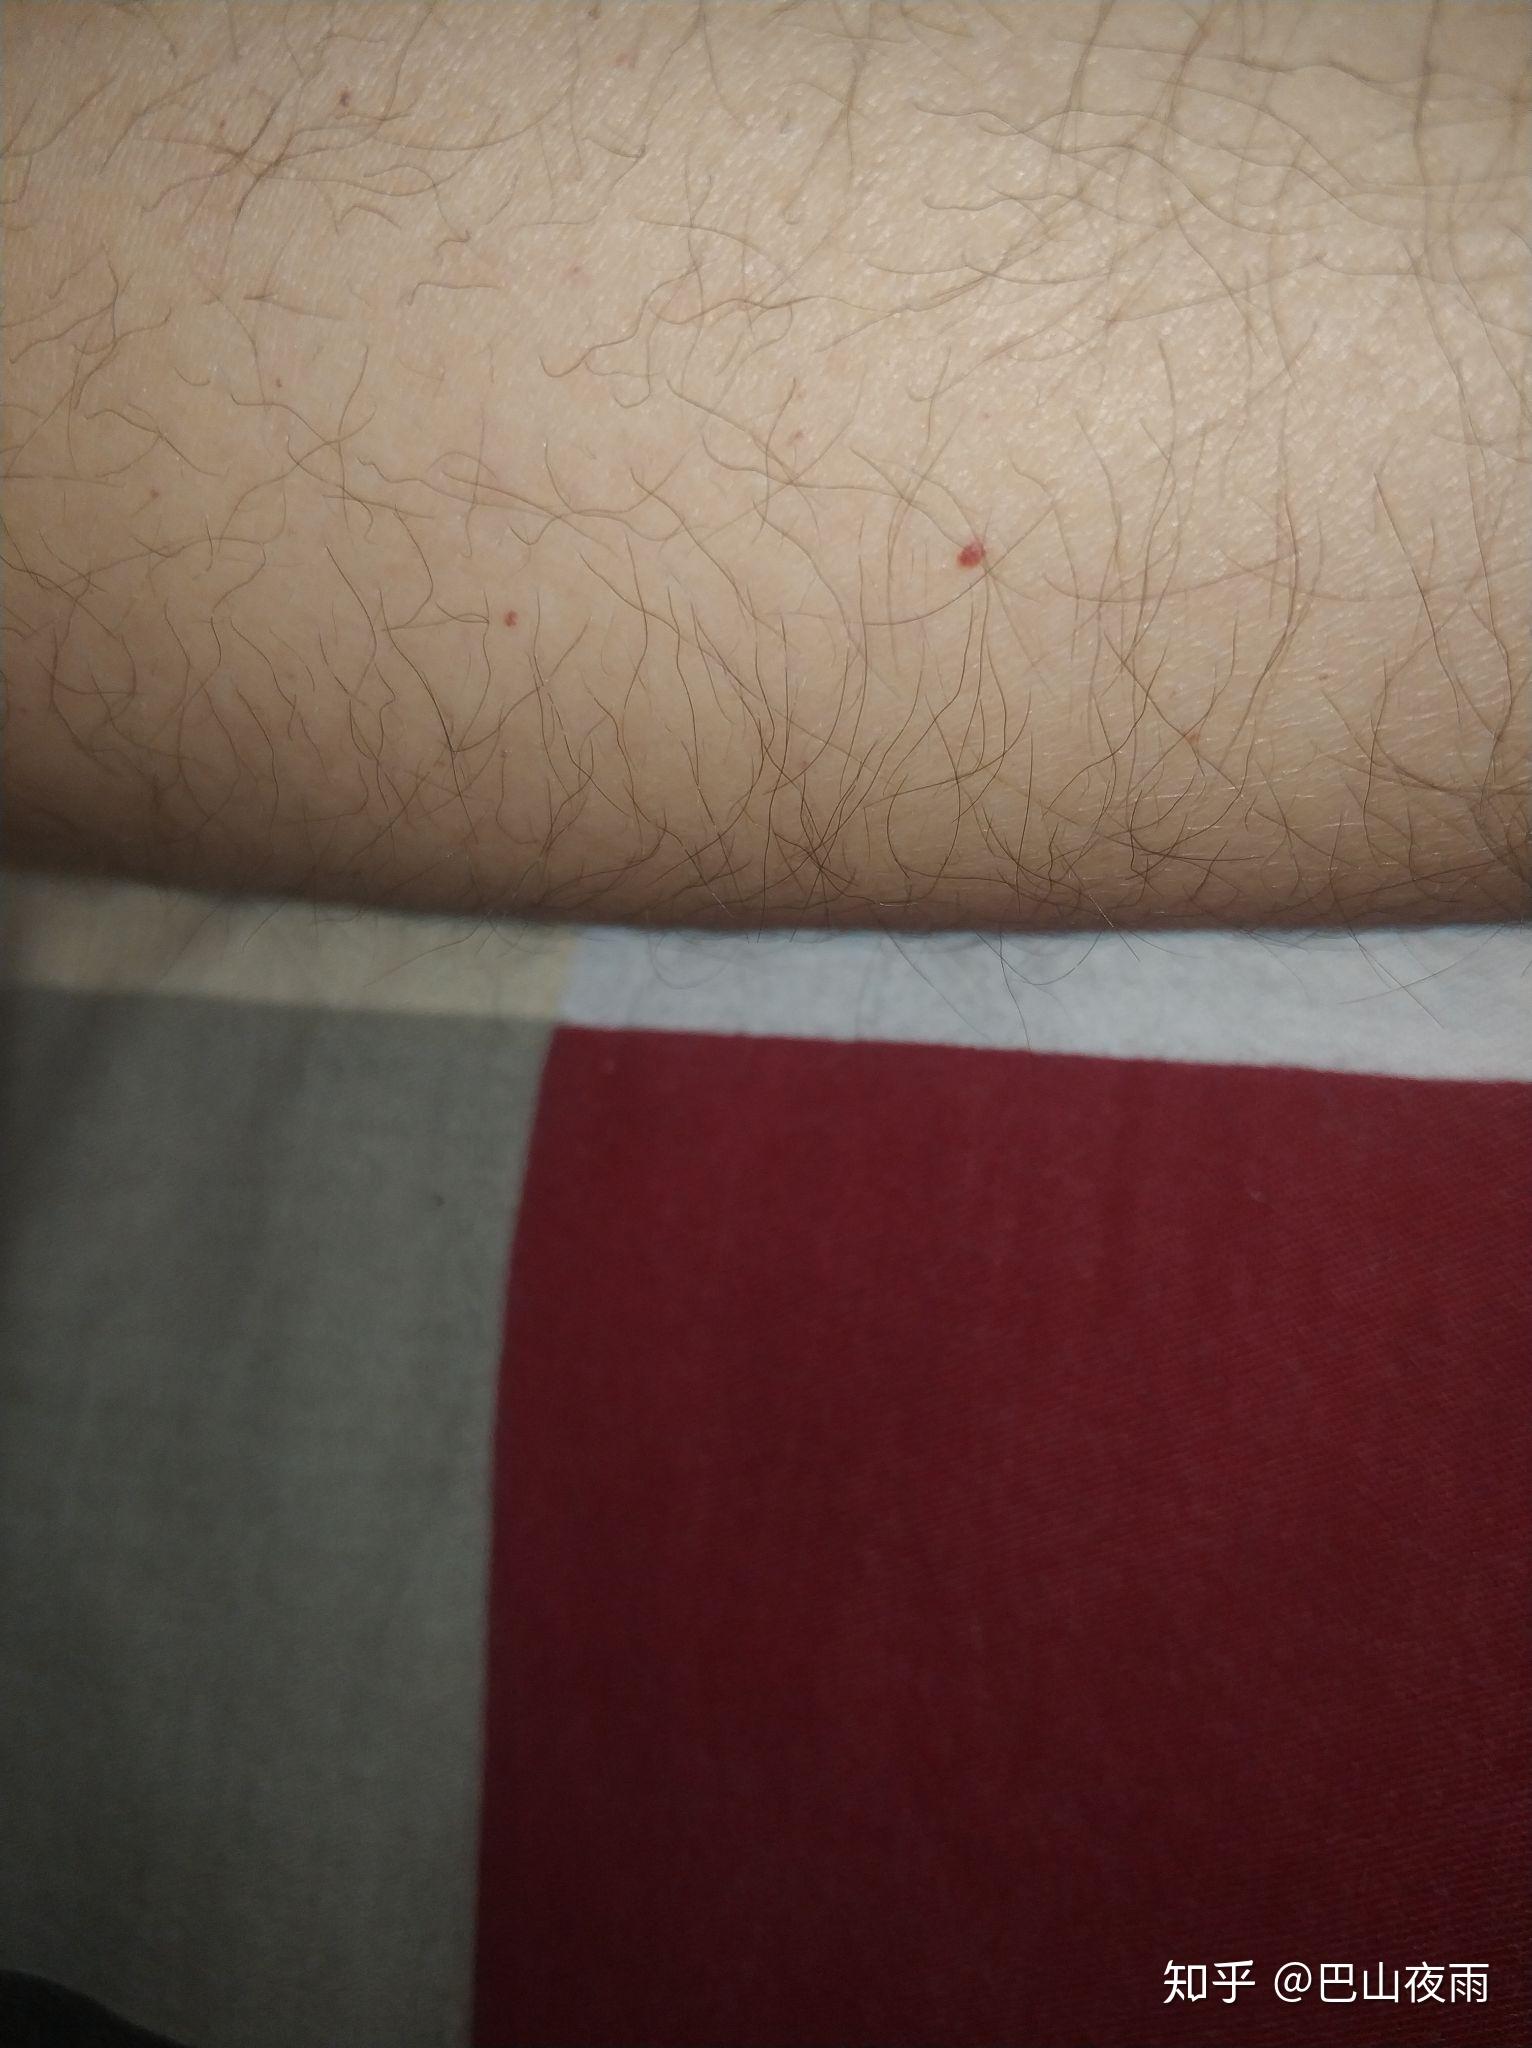 皮肤上的红色小血点是什么